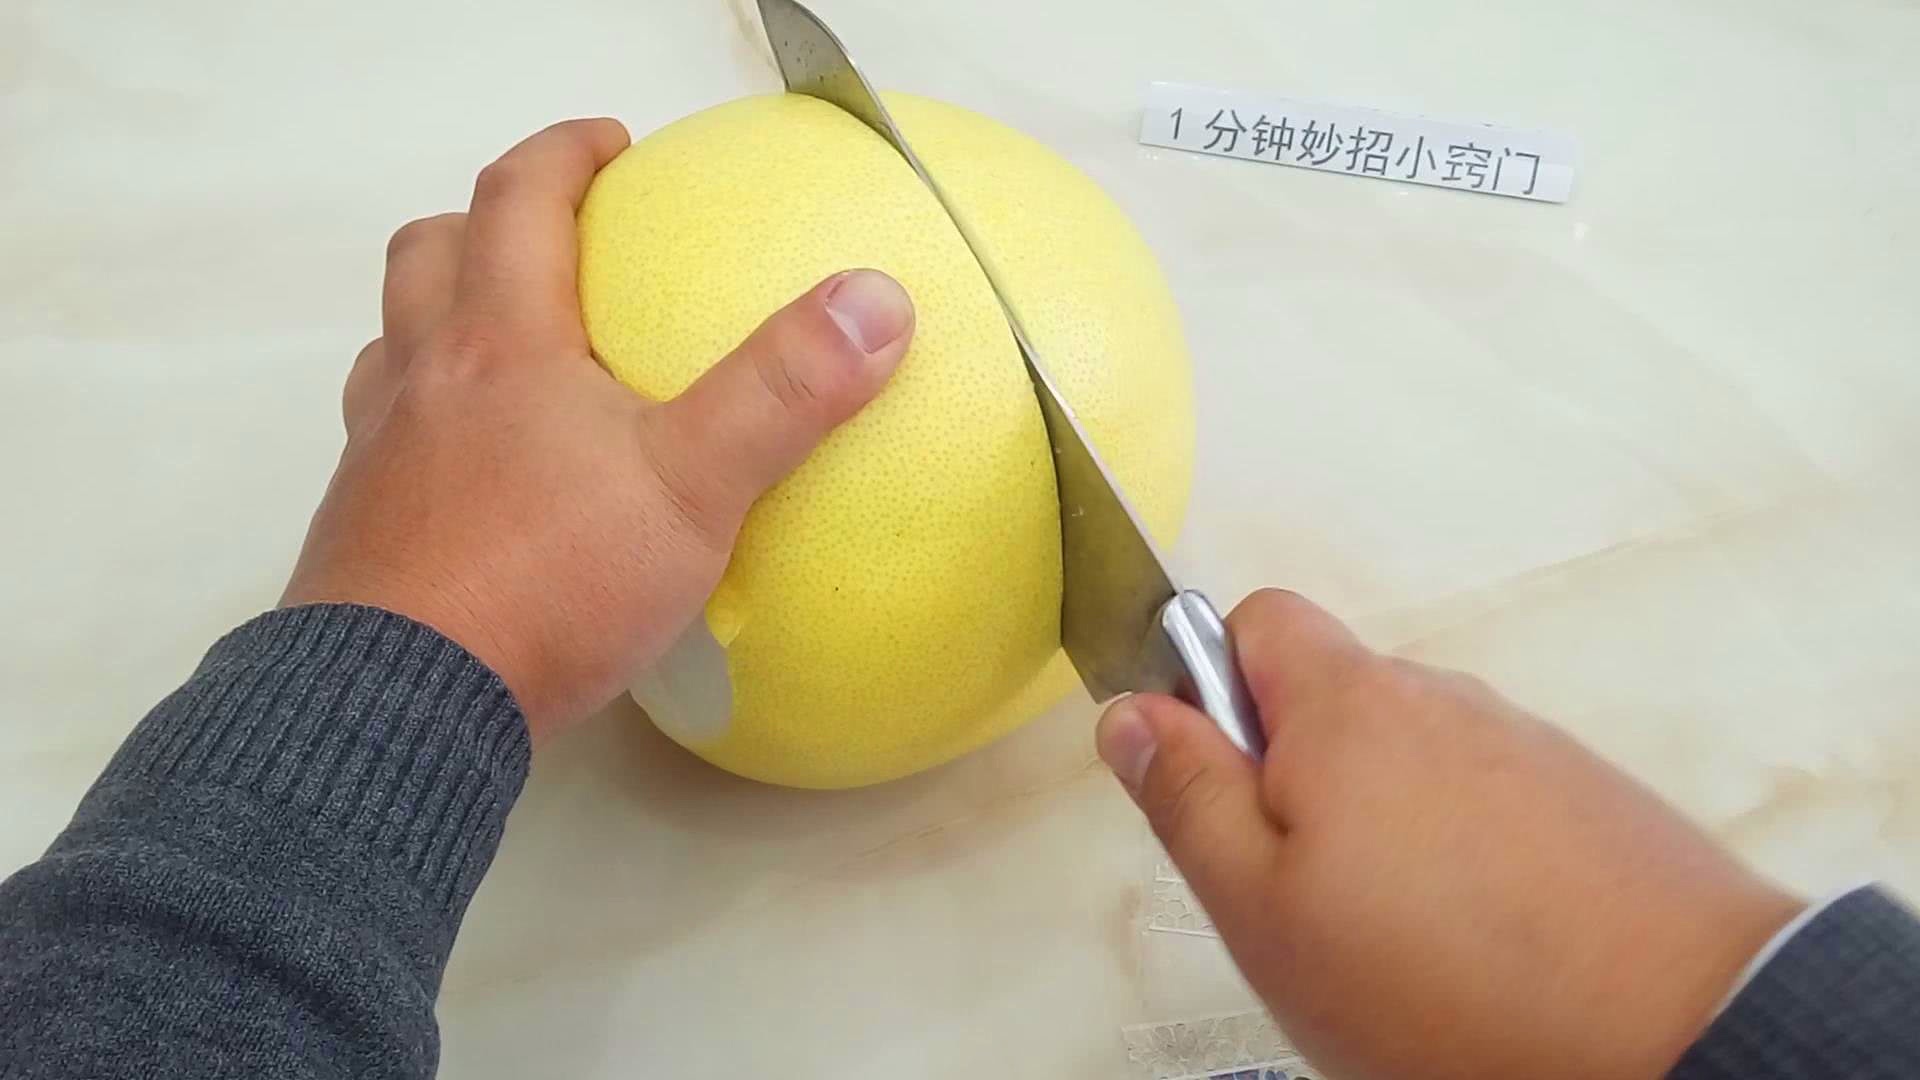 这是我见过最棒的剥柚子方法!只需切几刀,比直